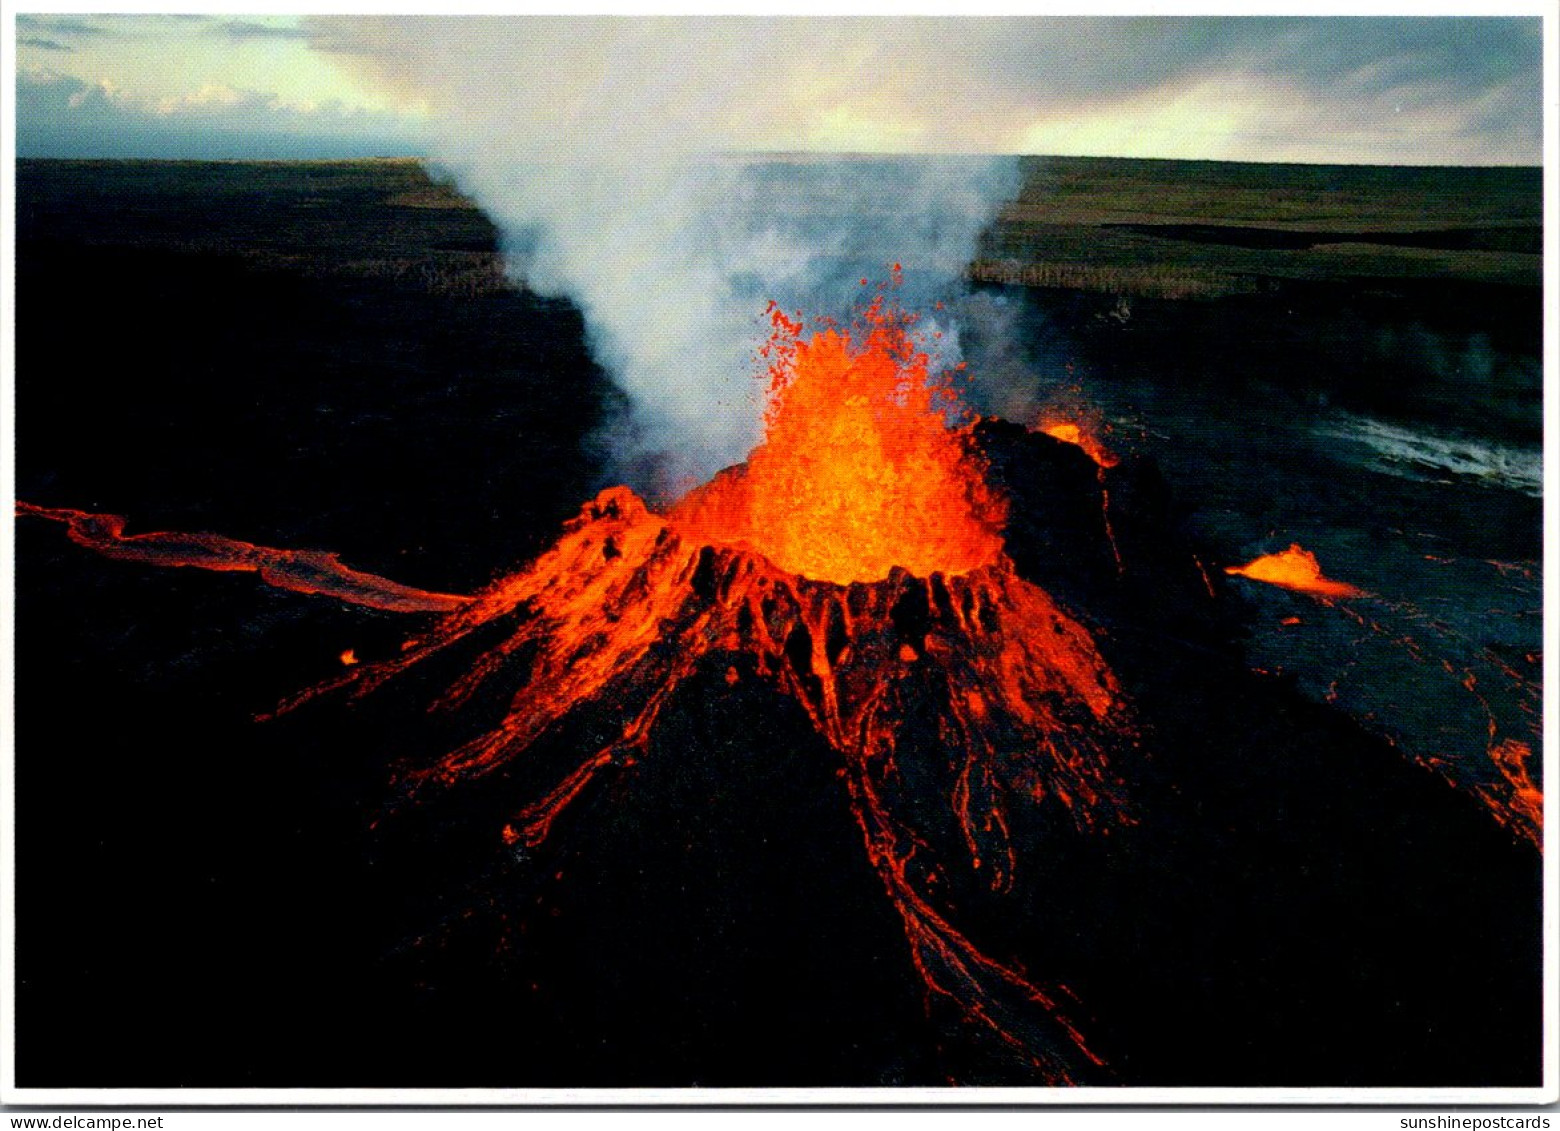 Hawaii Big Island The Kilauea Volcano - Big Island Of Hawaii